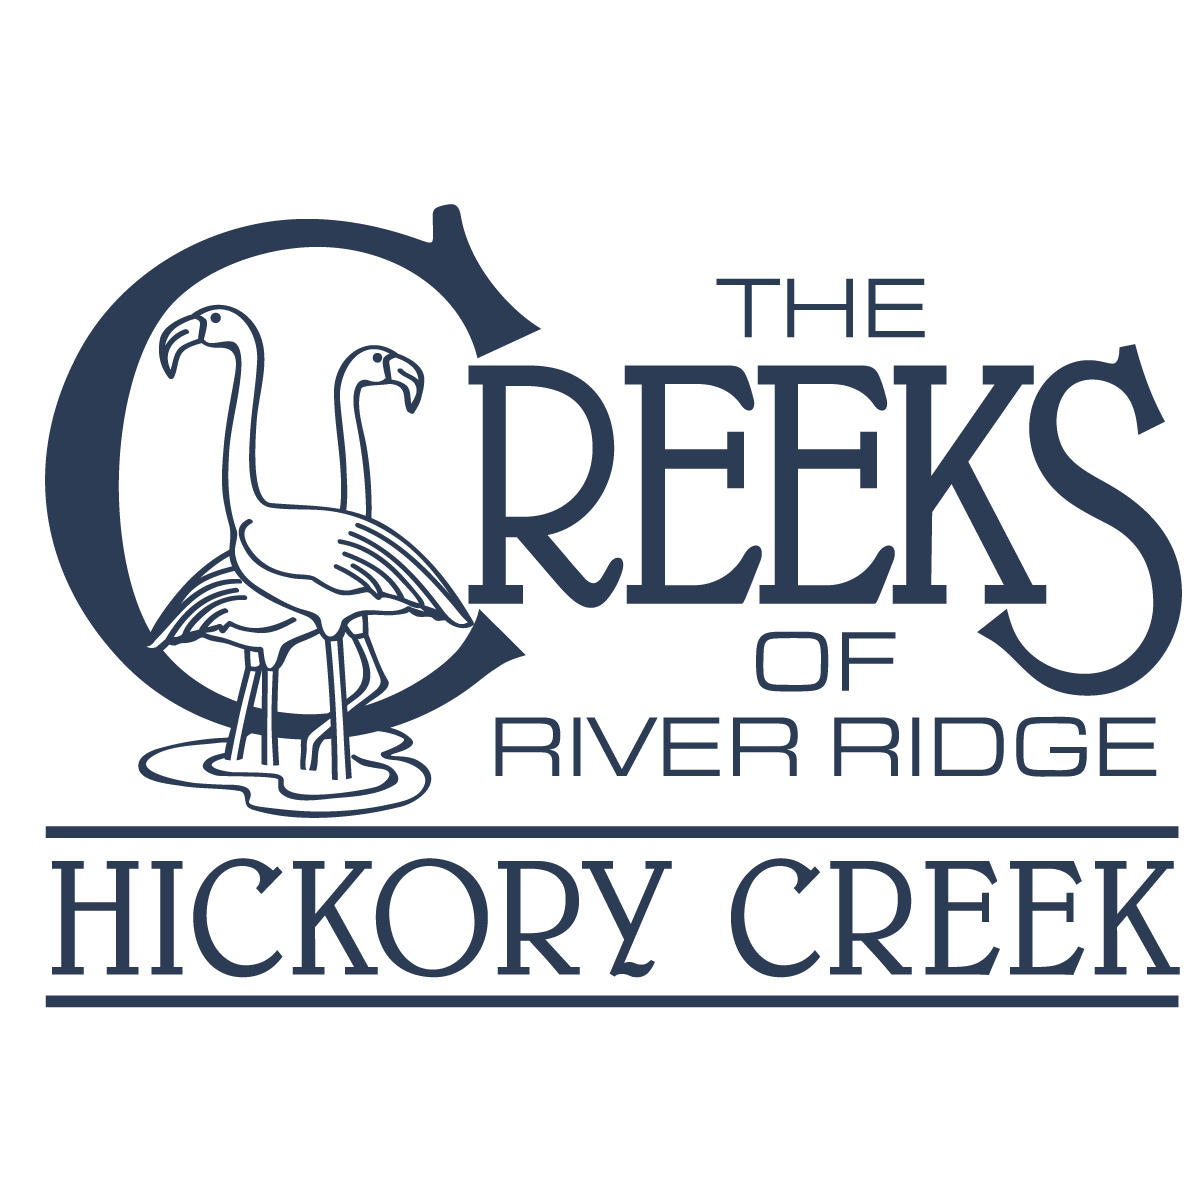 Hickory Creek East